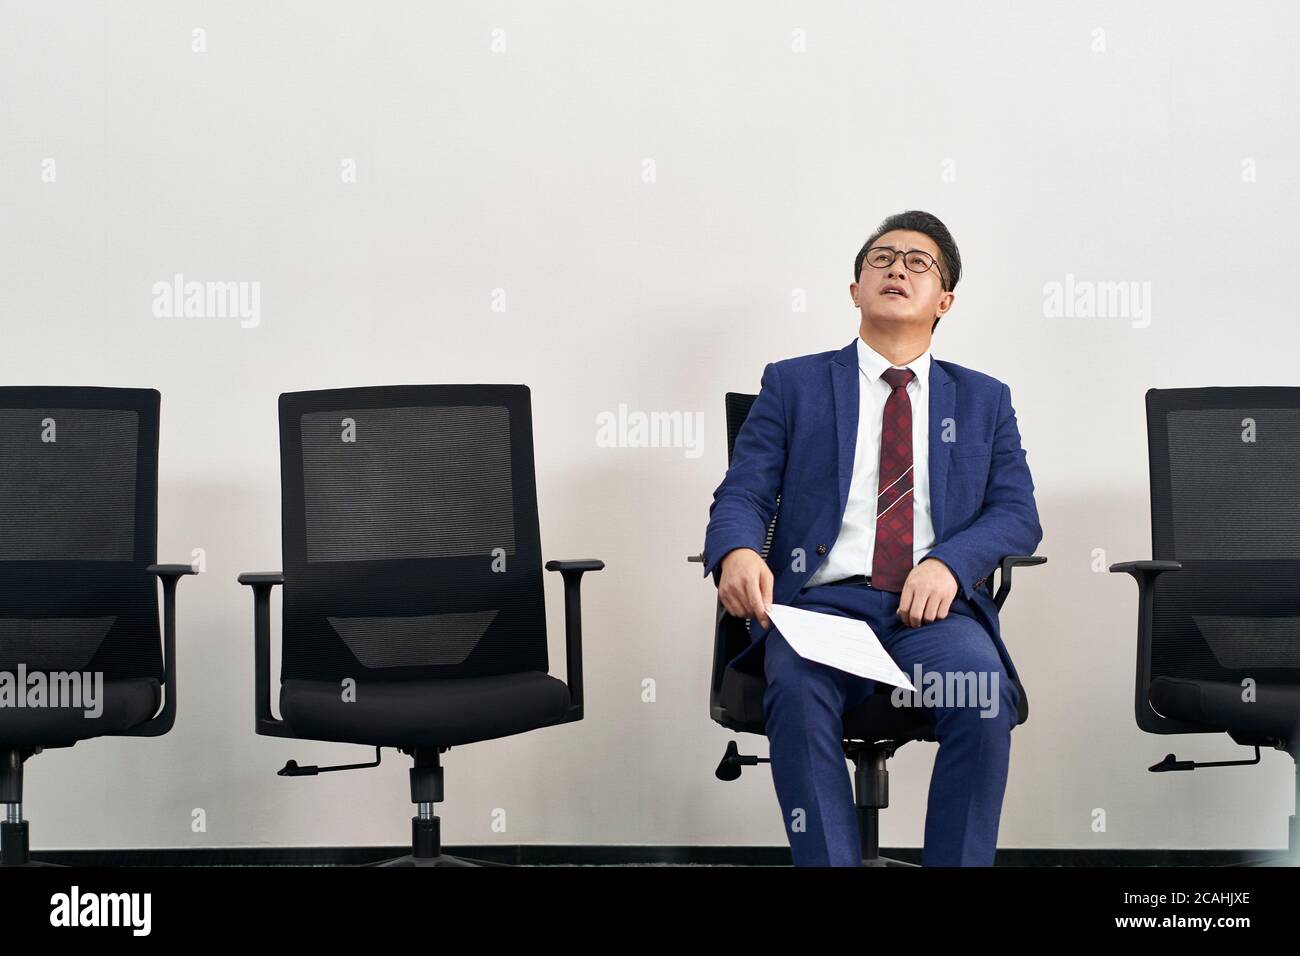 un homme asiatique plus âgé recherche un emploi à la hauteur du plafond en attendant une interview Banque D'Images